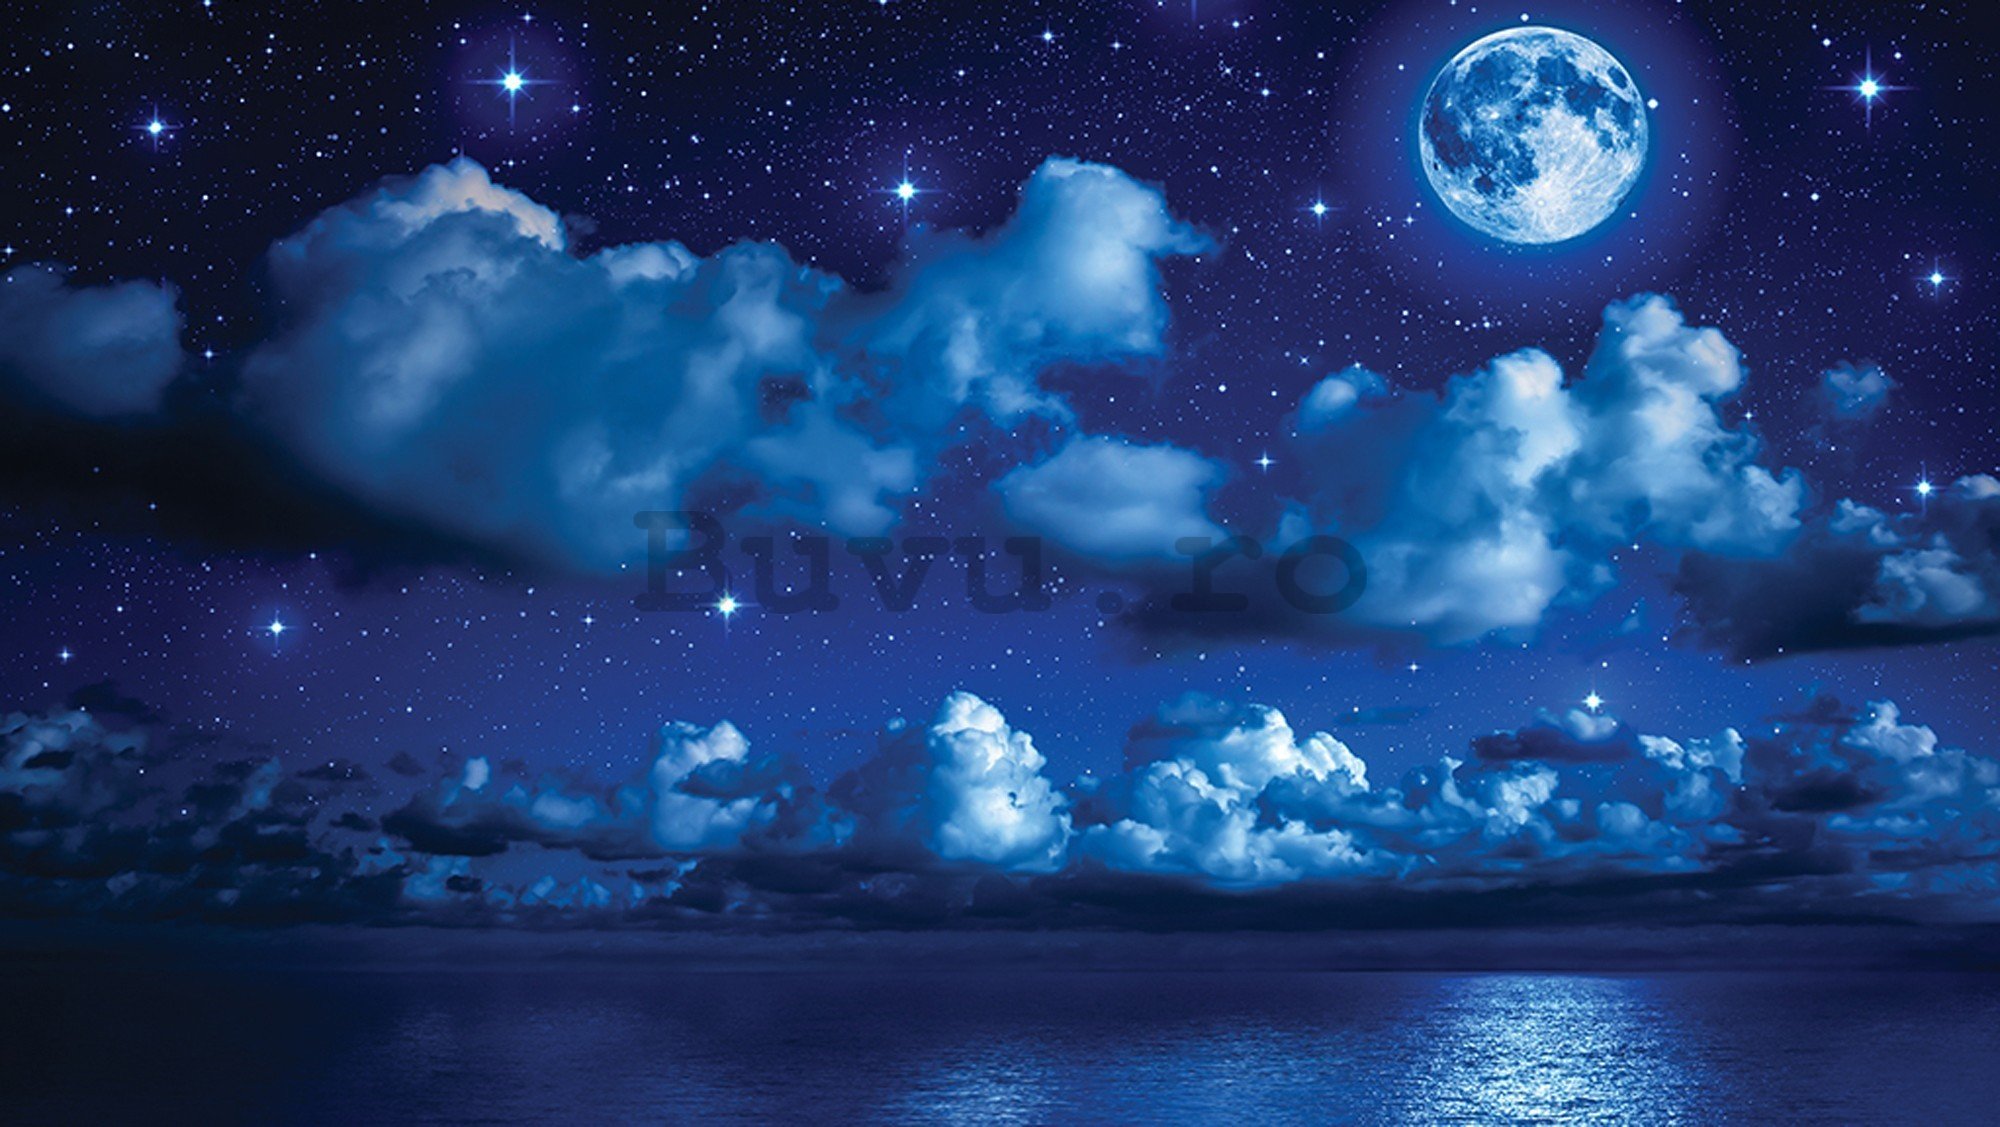 Fototapet vlies: Noapte cu lună - 416x254 cm